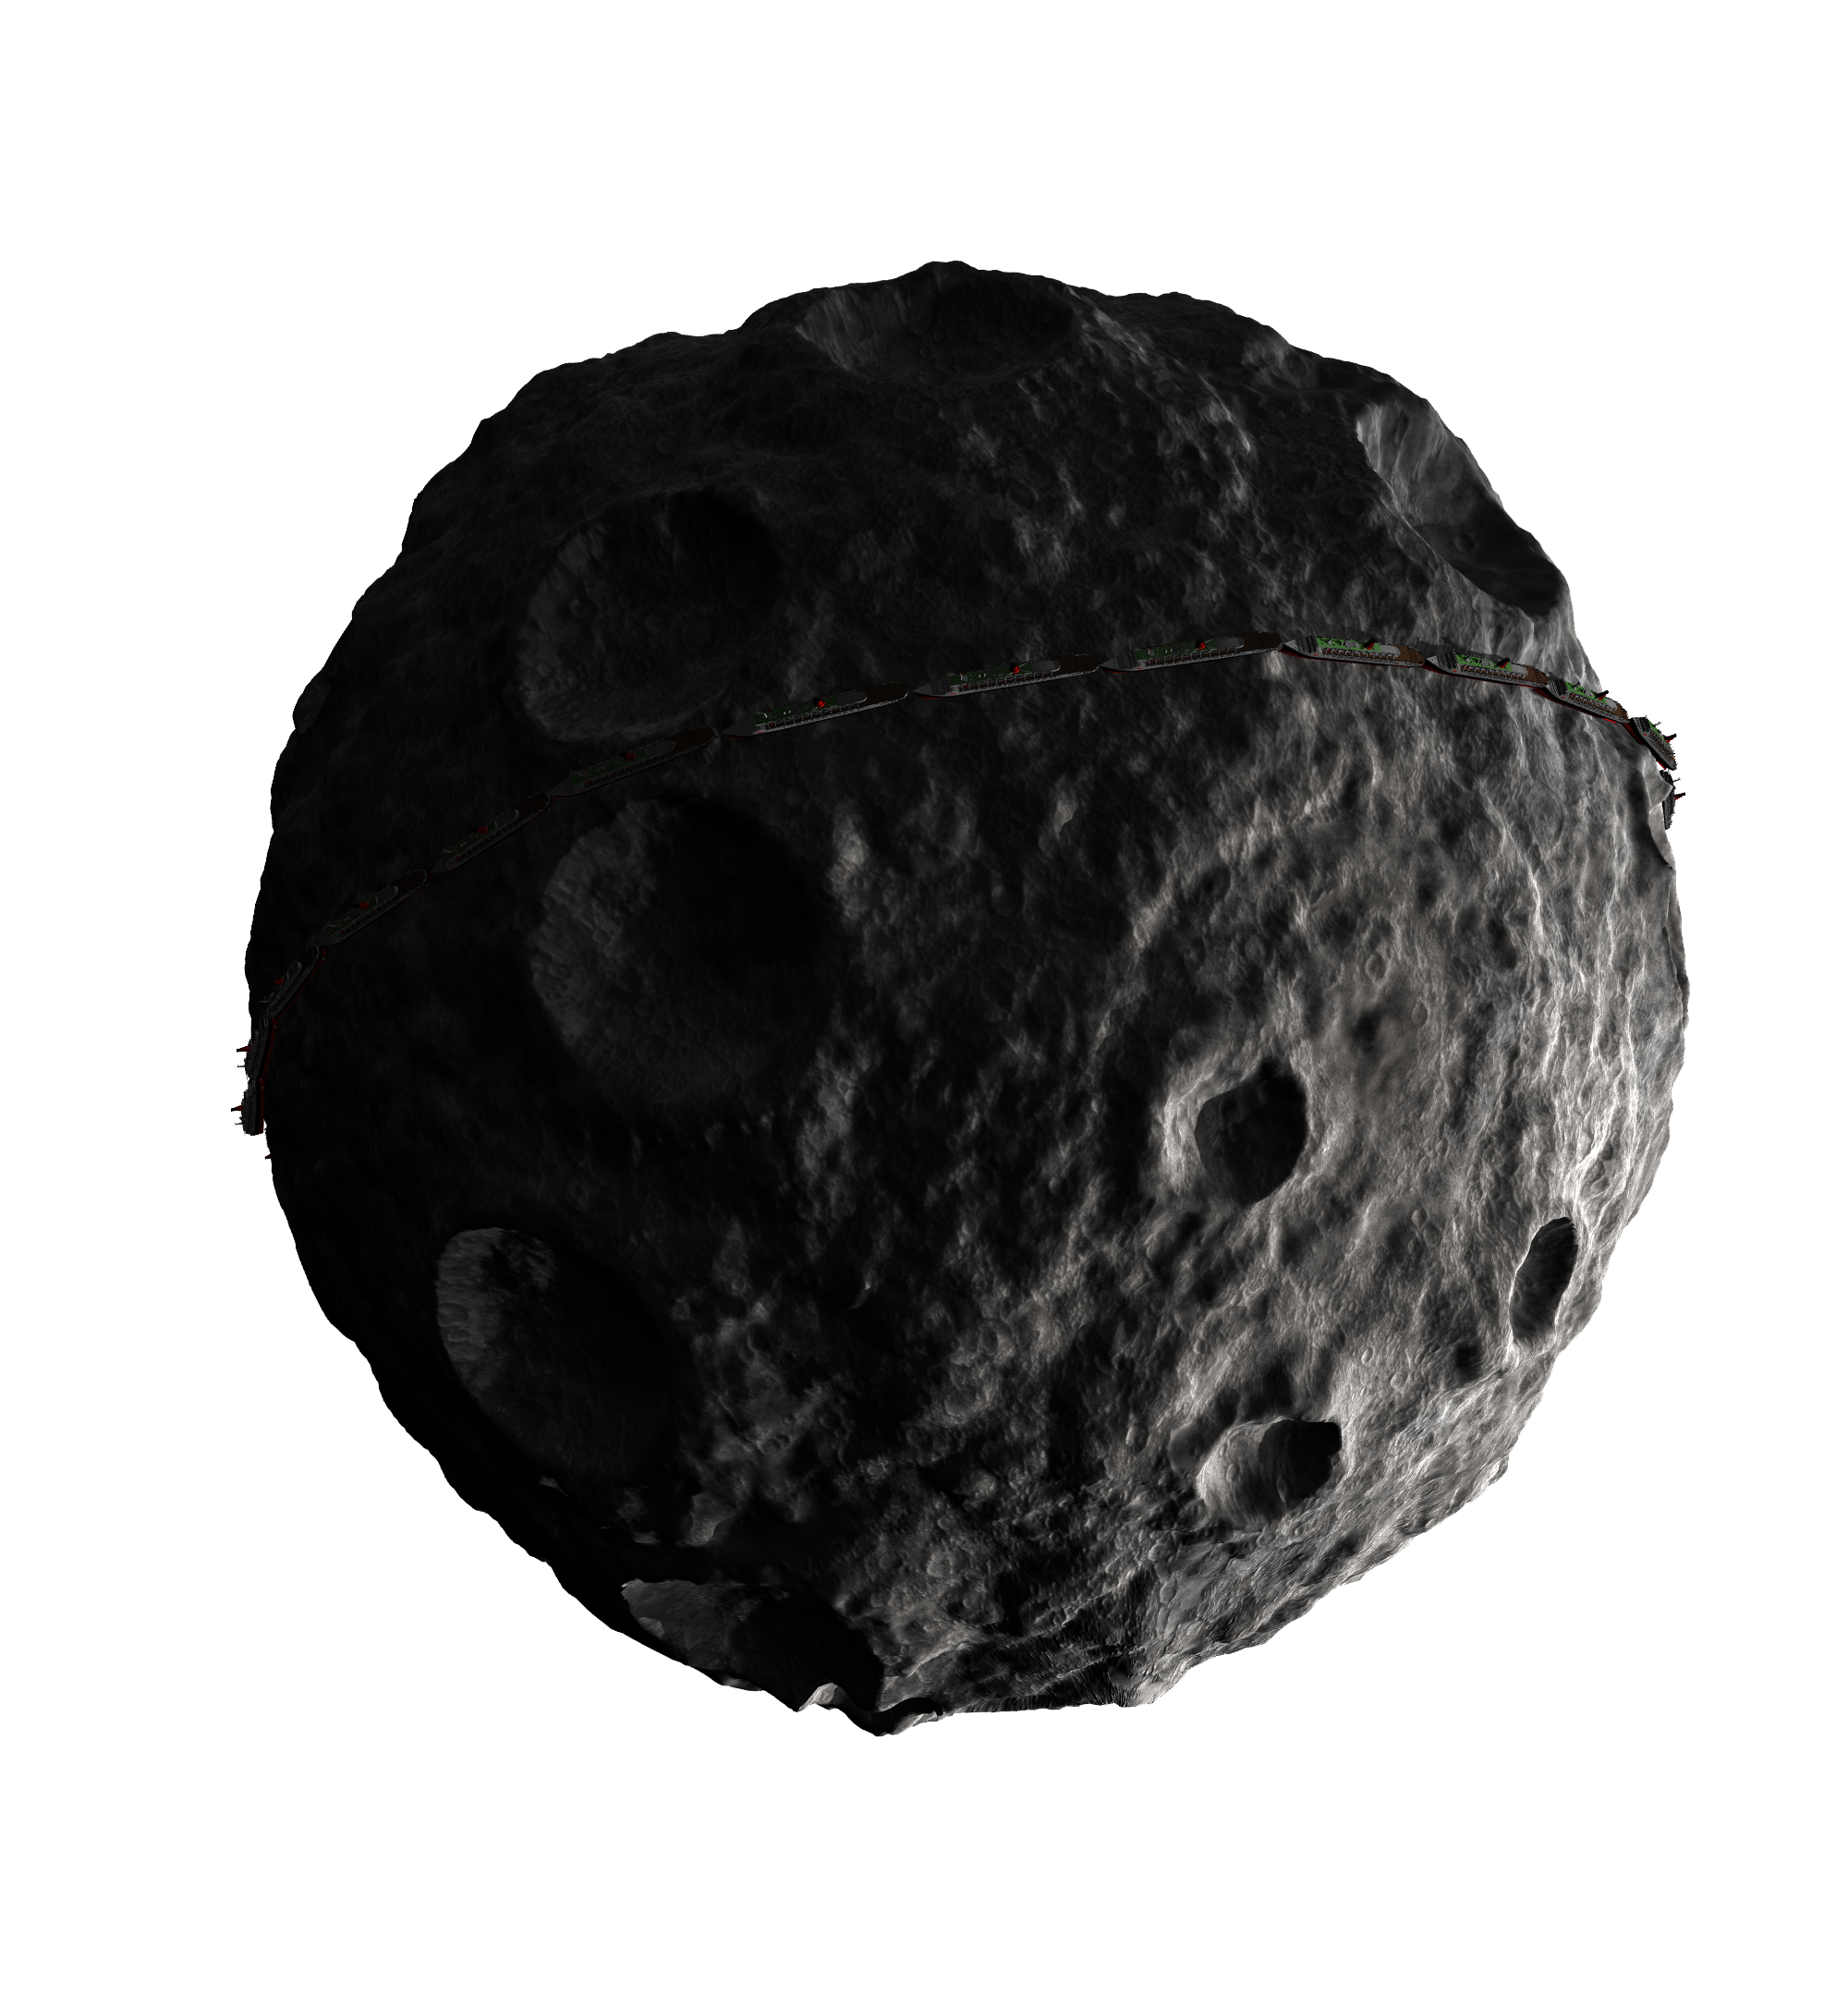 Imagen asteroide del meteorito PNG